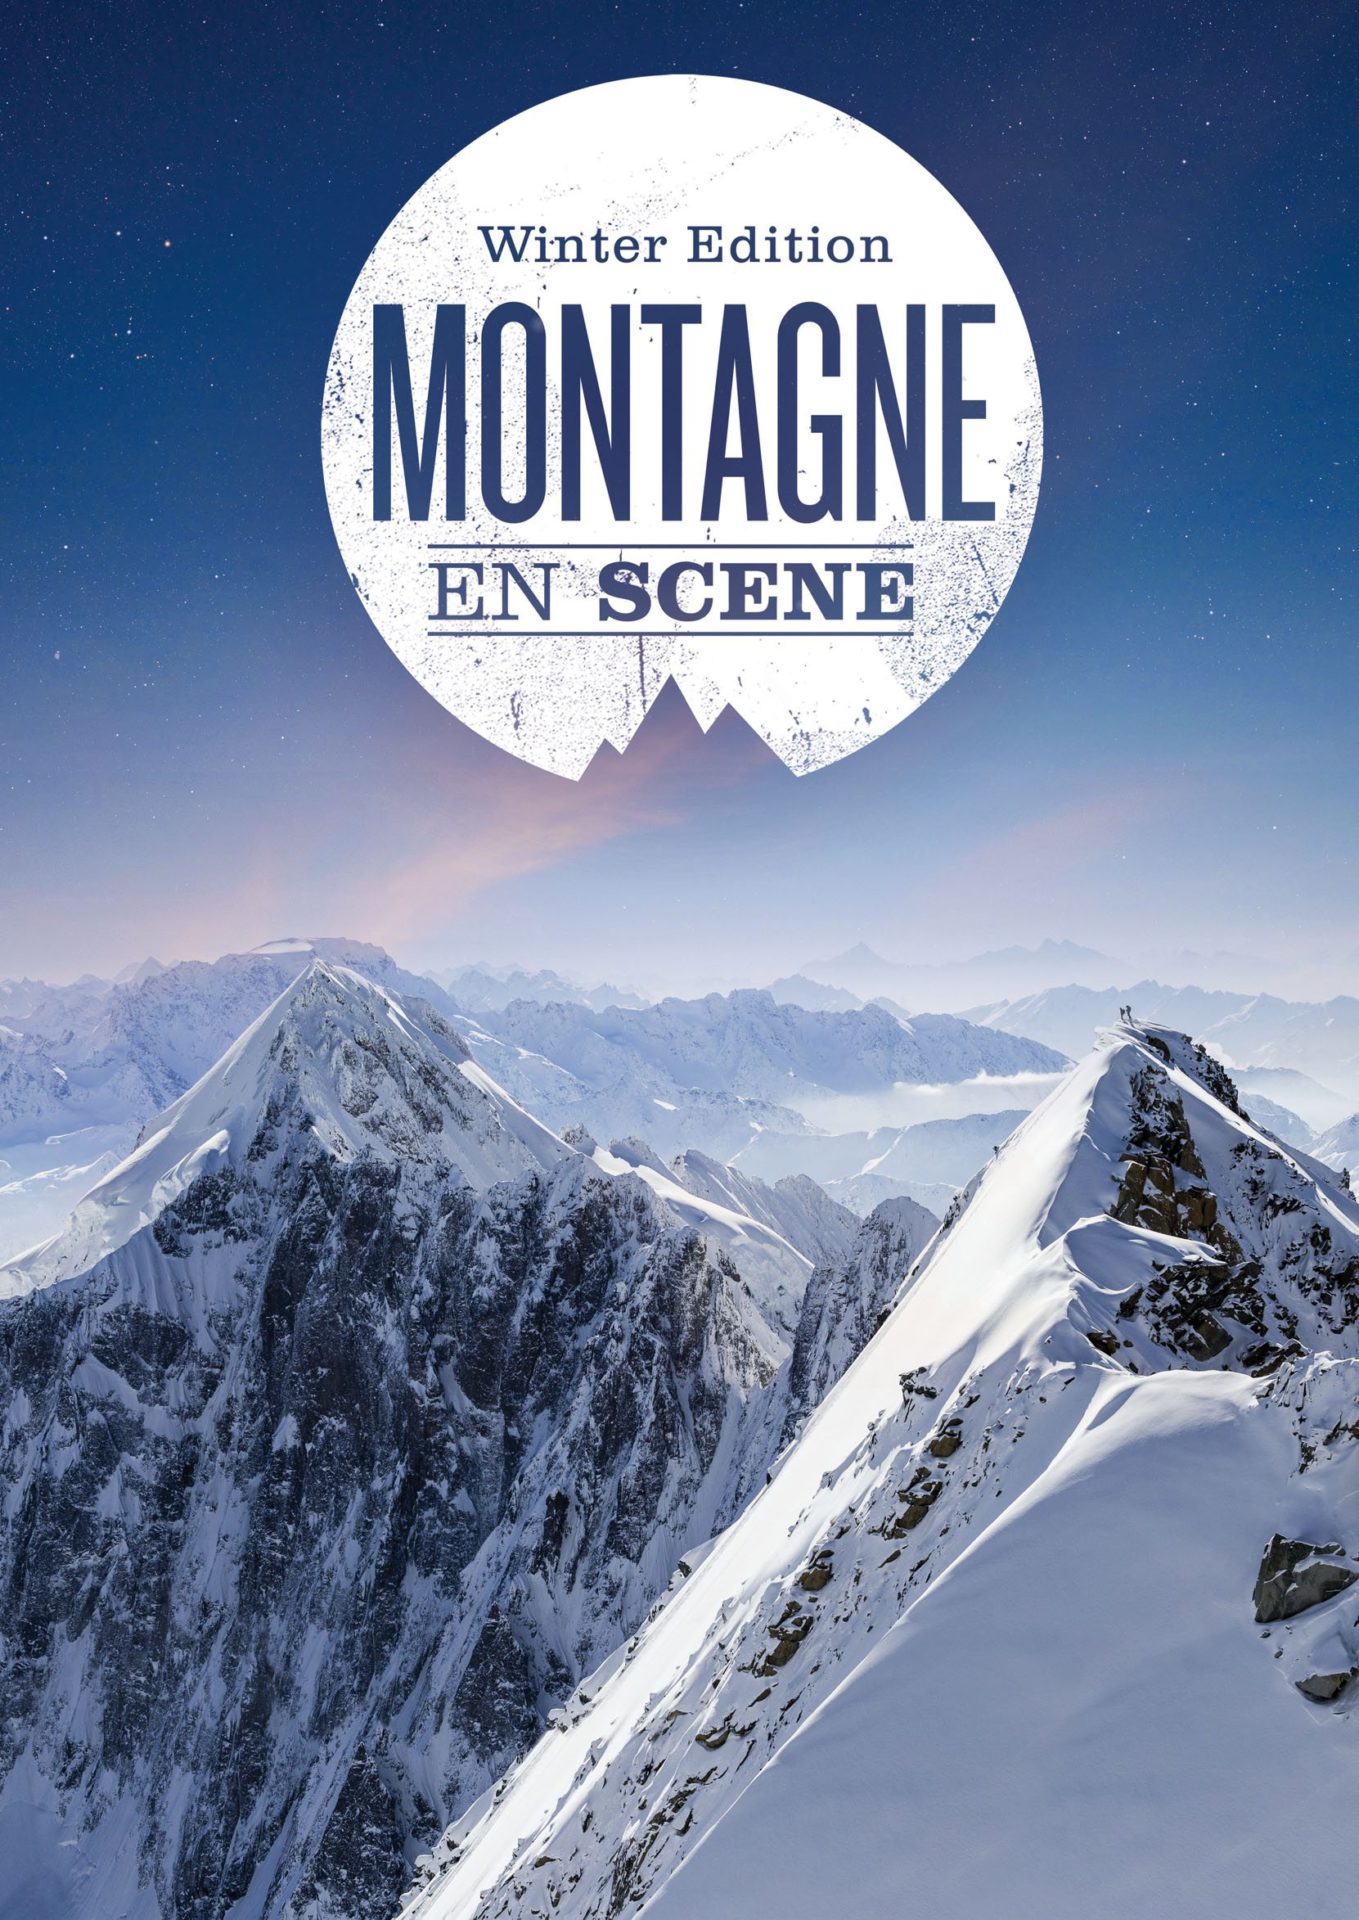 Montagne en scène
Winter edition 2017
©www.jeremy-bernard